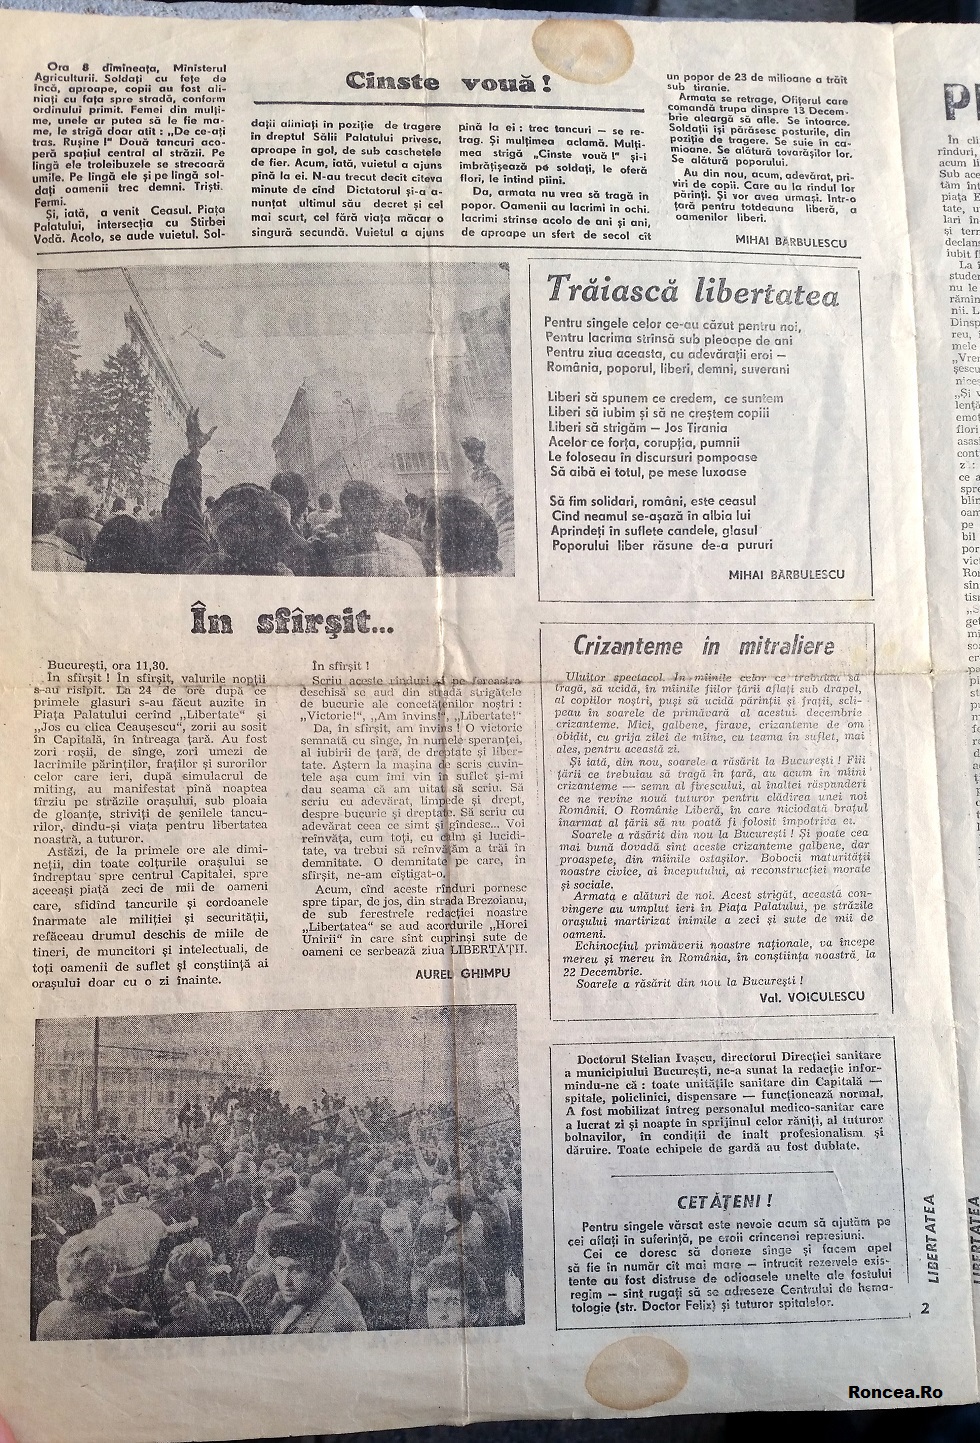 Primul numar al Ziarului Libertatea 22.12.1989 via Roncea Ro 2